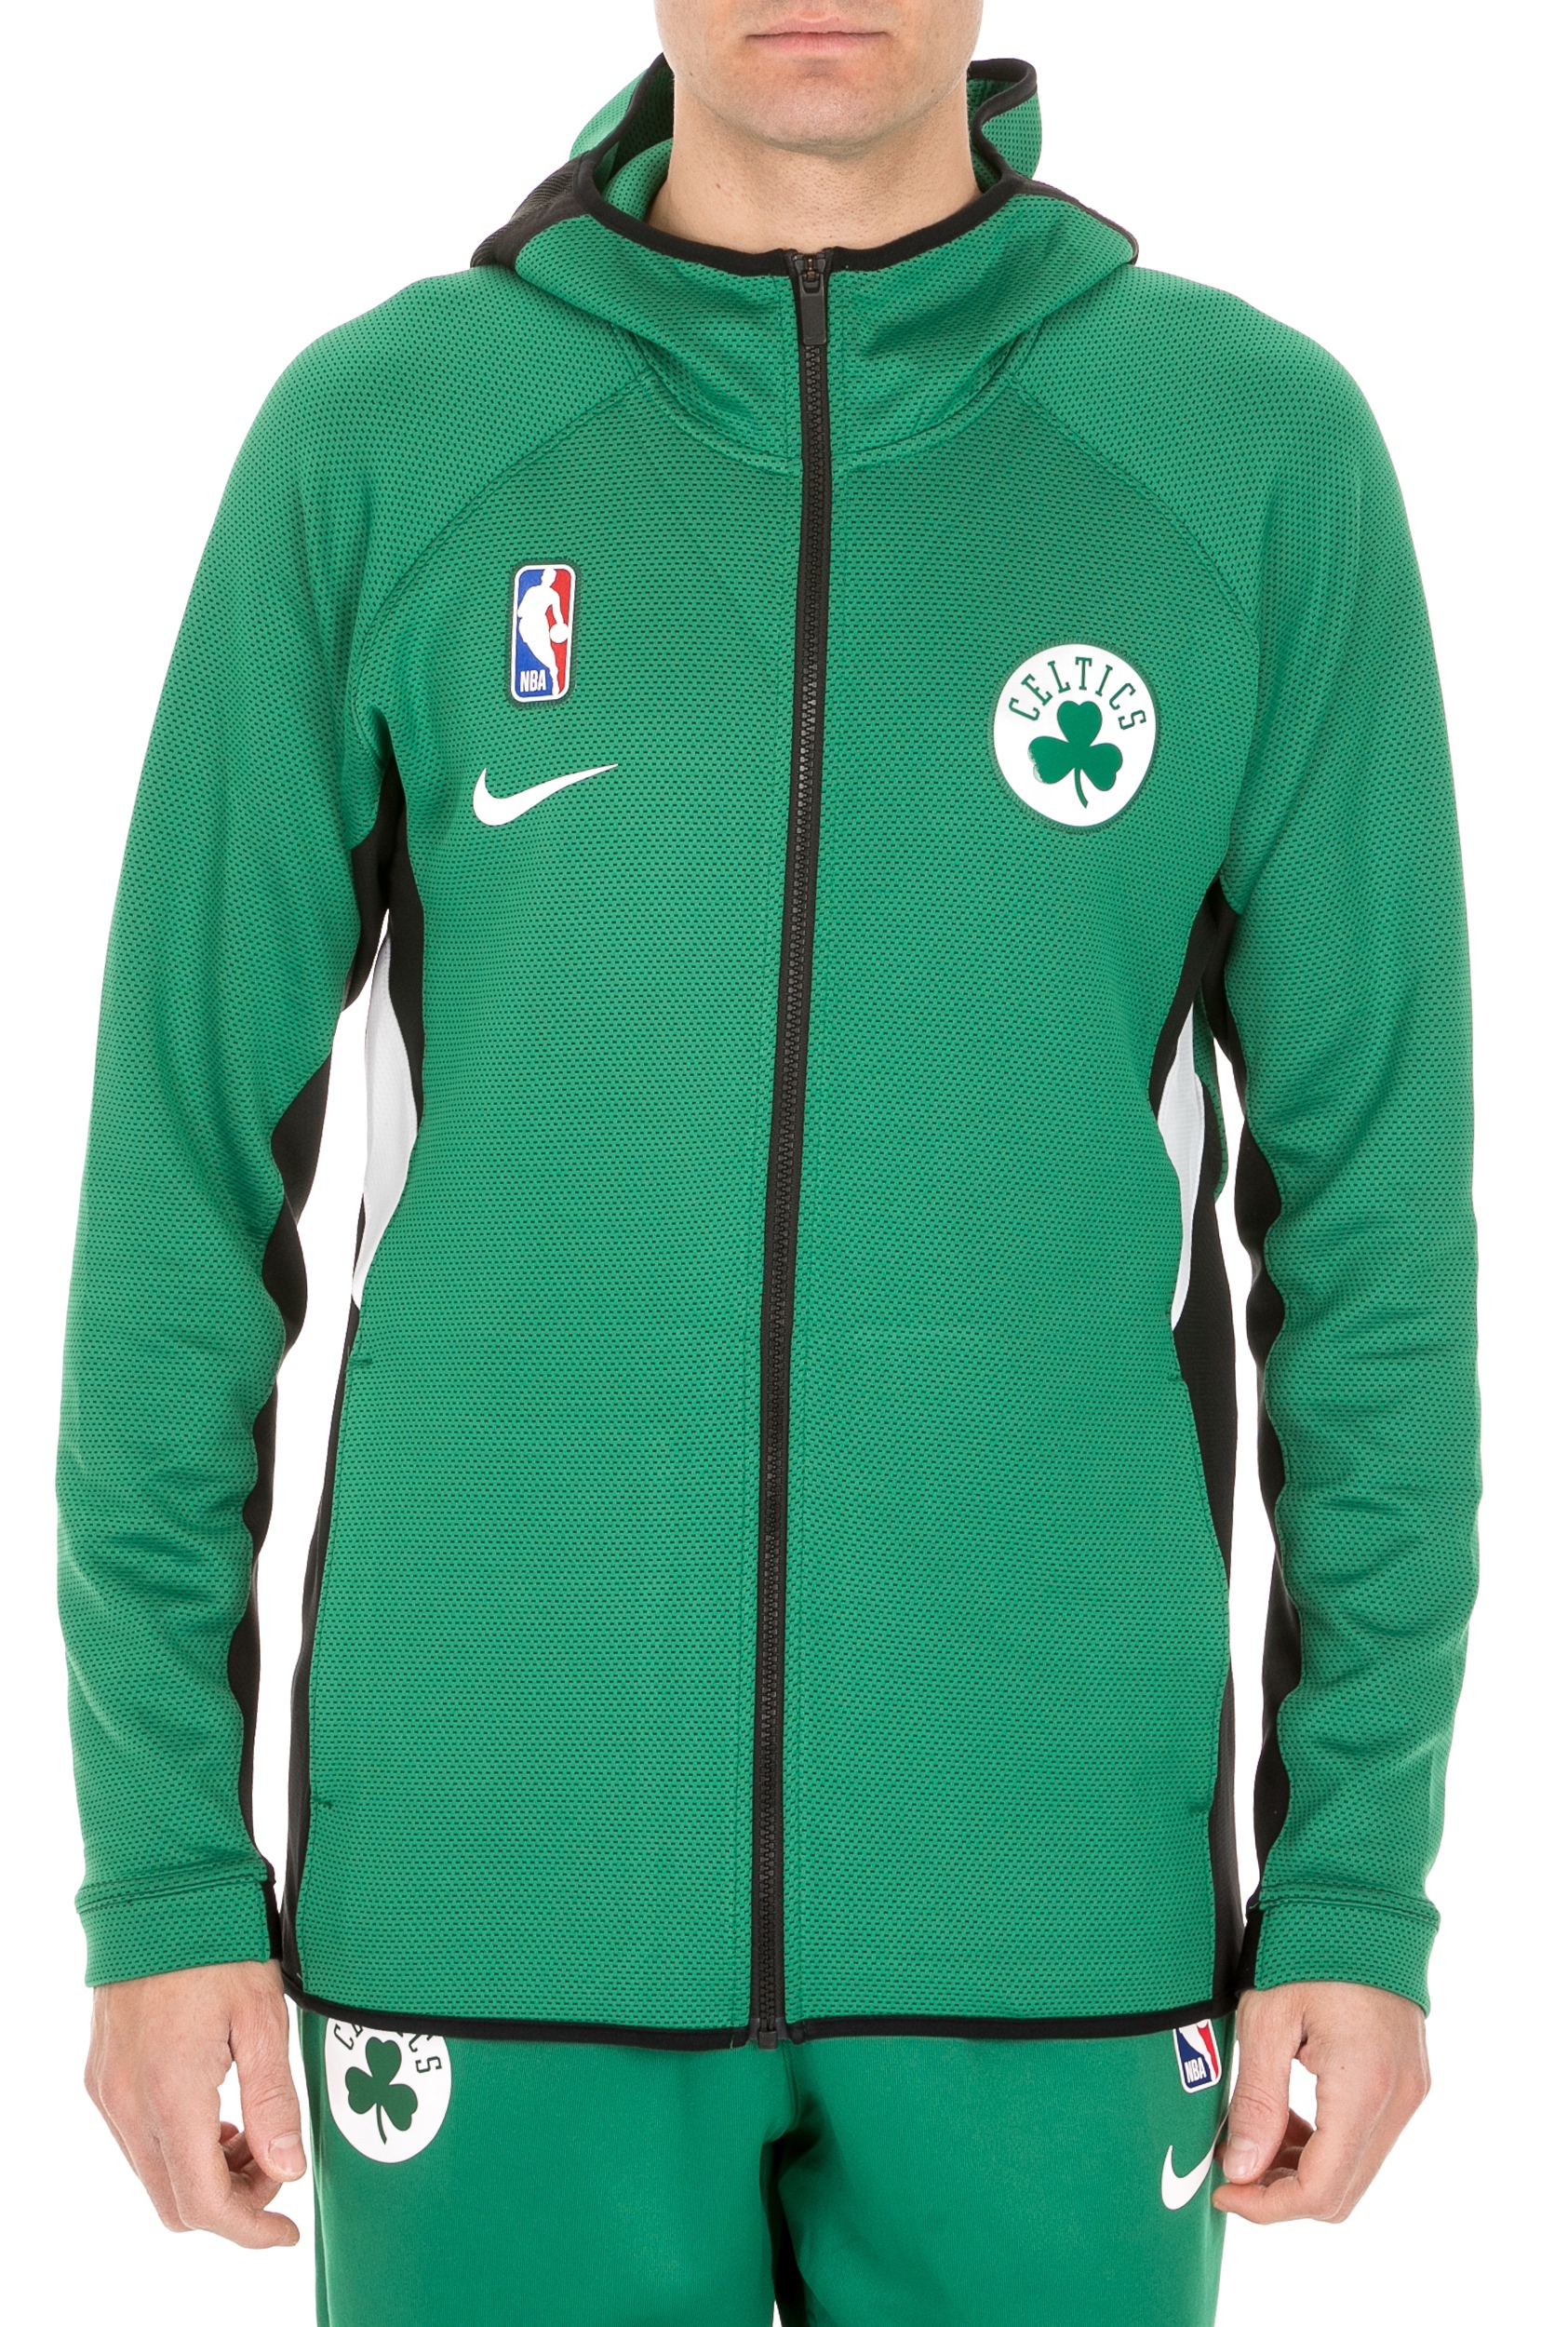 Ανδρικά/Ρούχα/Φούτερ/Ζακέτες NIKE - Ανδρική ζακέτα NIKE Boston Celtics πράσινη